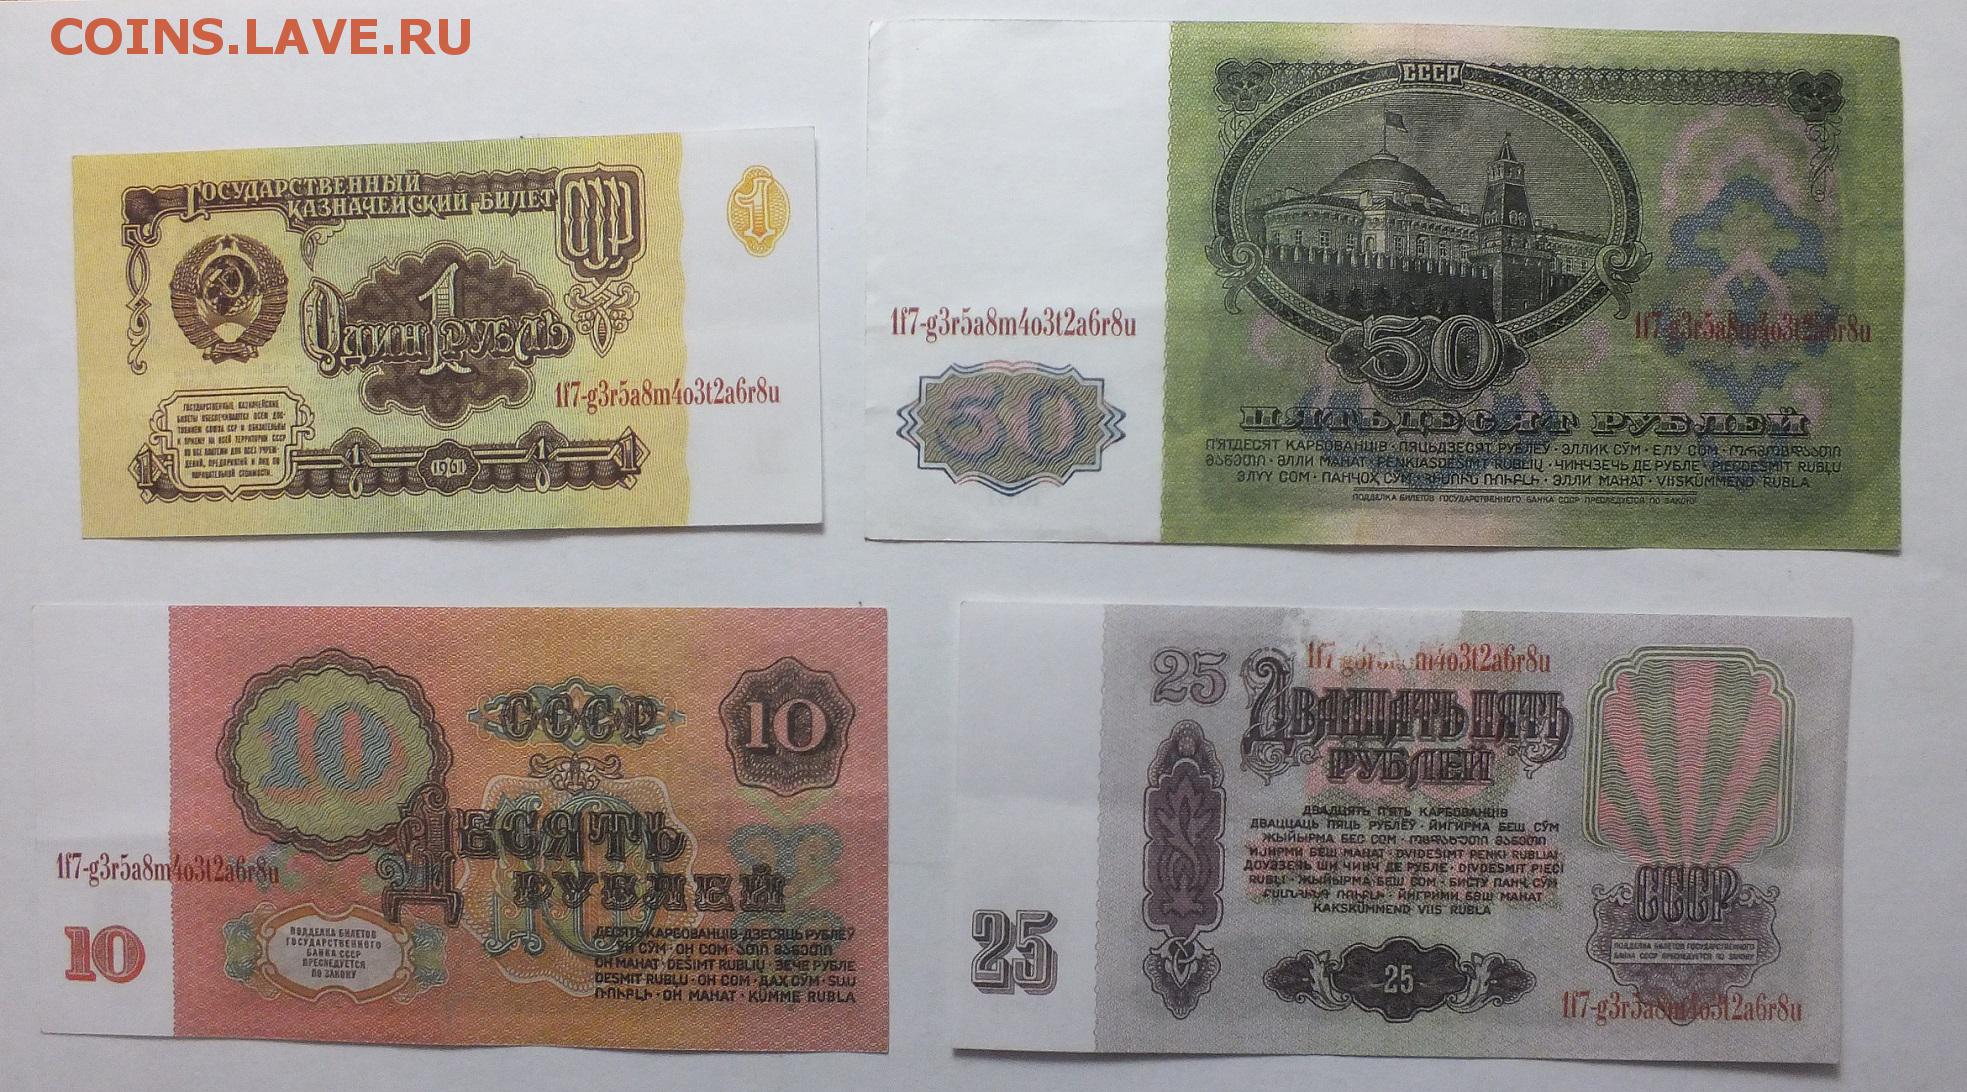 Сум на российские рубли